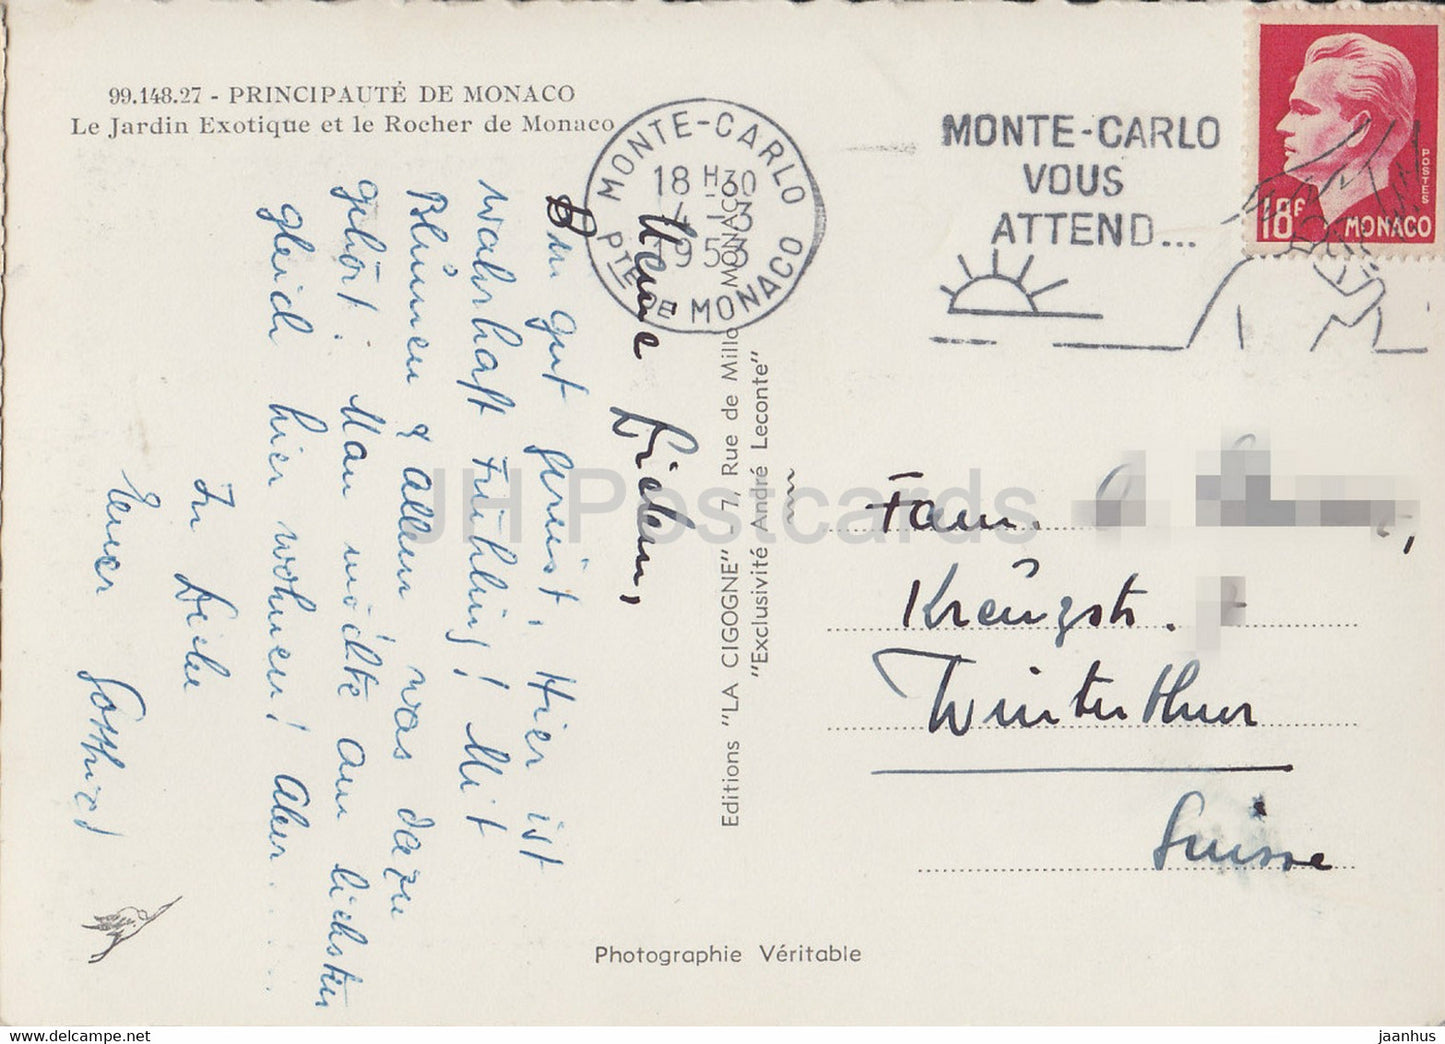 Le Jardin Exotique et le Rocher de Monaco - carte postale ancienne - 1953 - Monaco - occasion